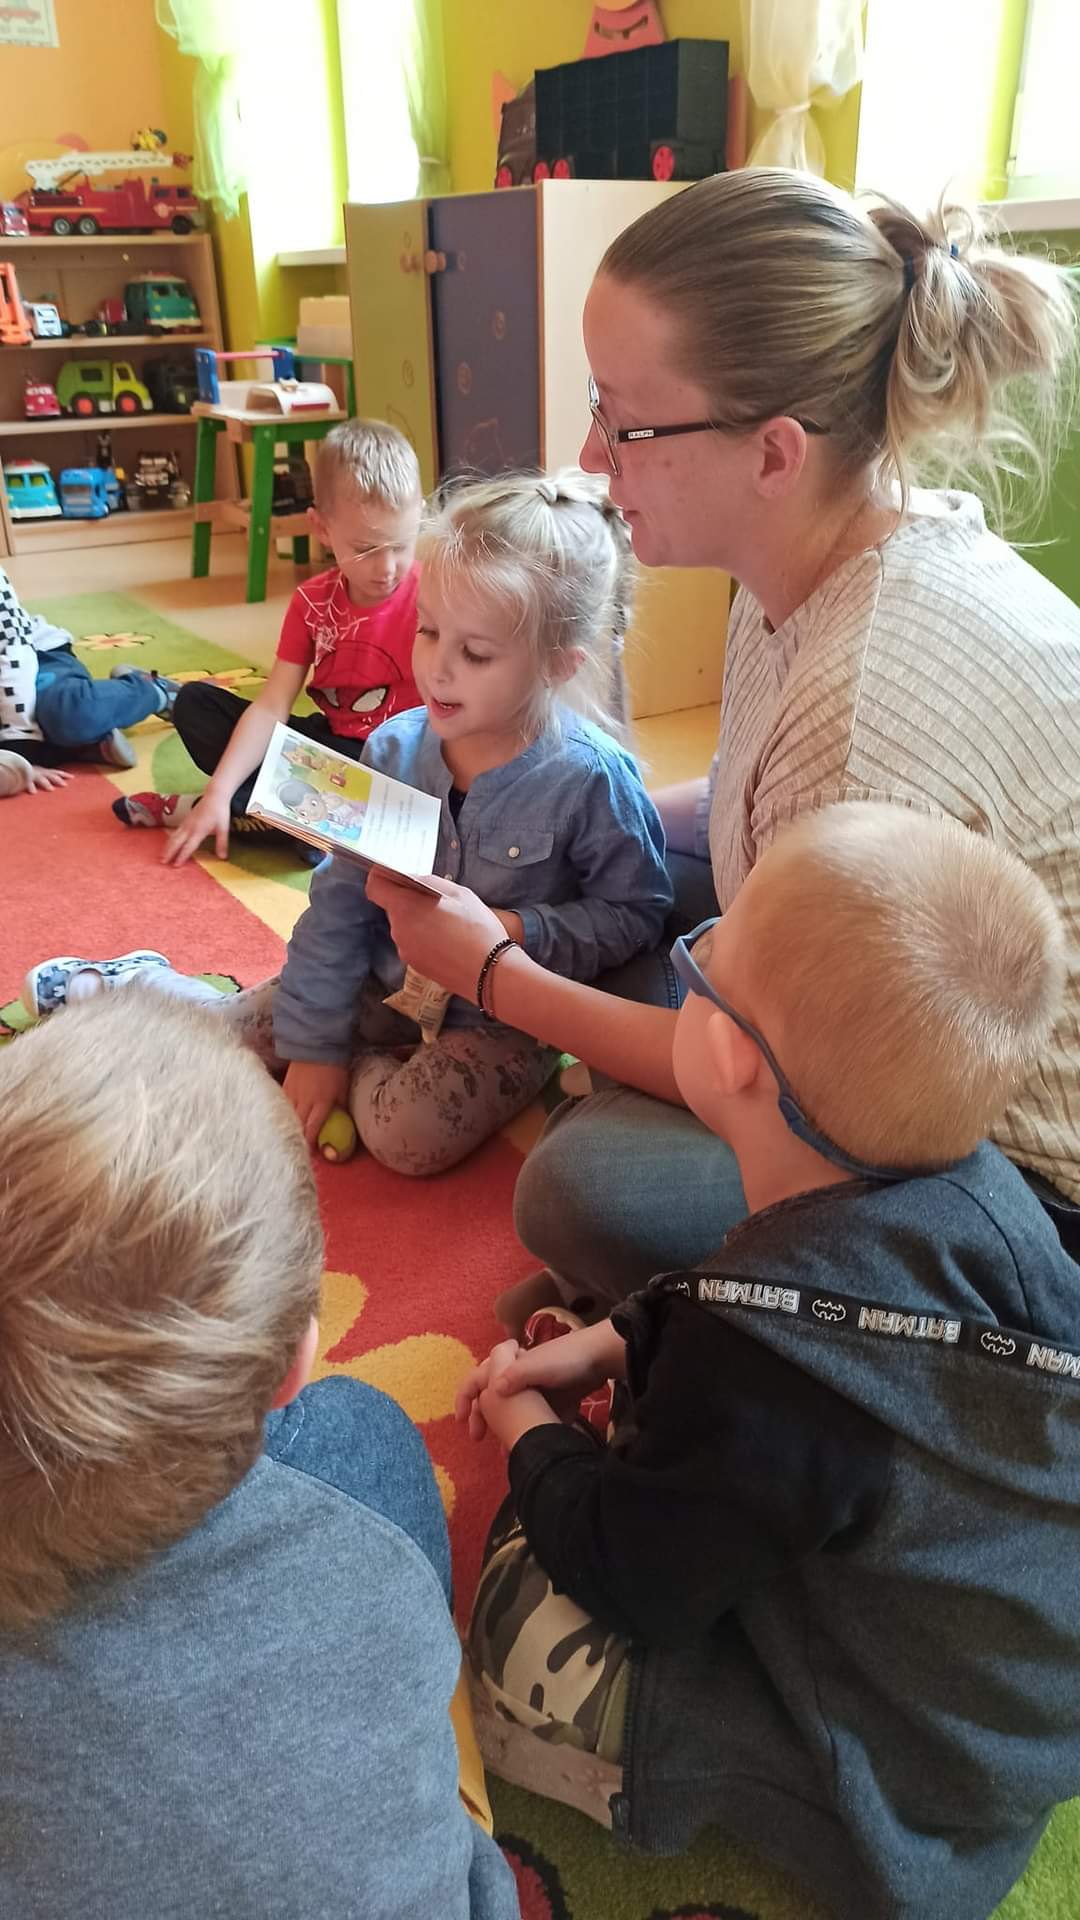 Apsiki "Czytanie na dywanie" - rodzice czytają dzieciom